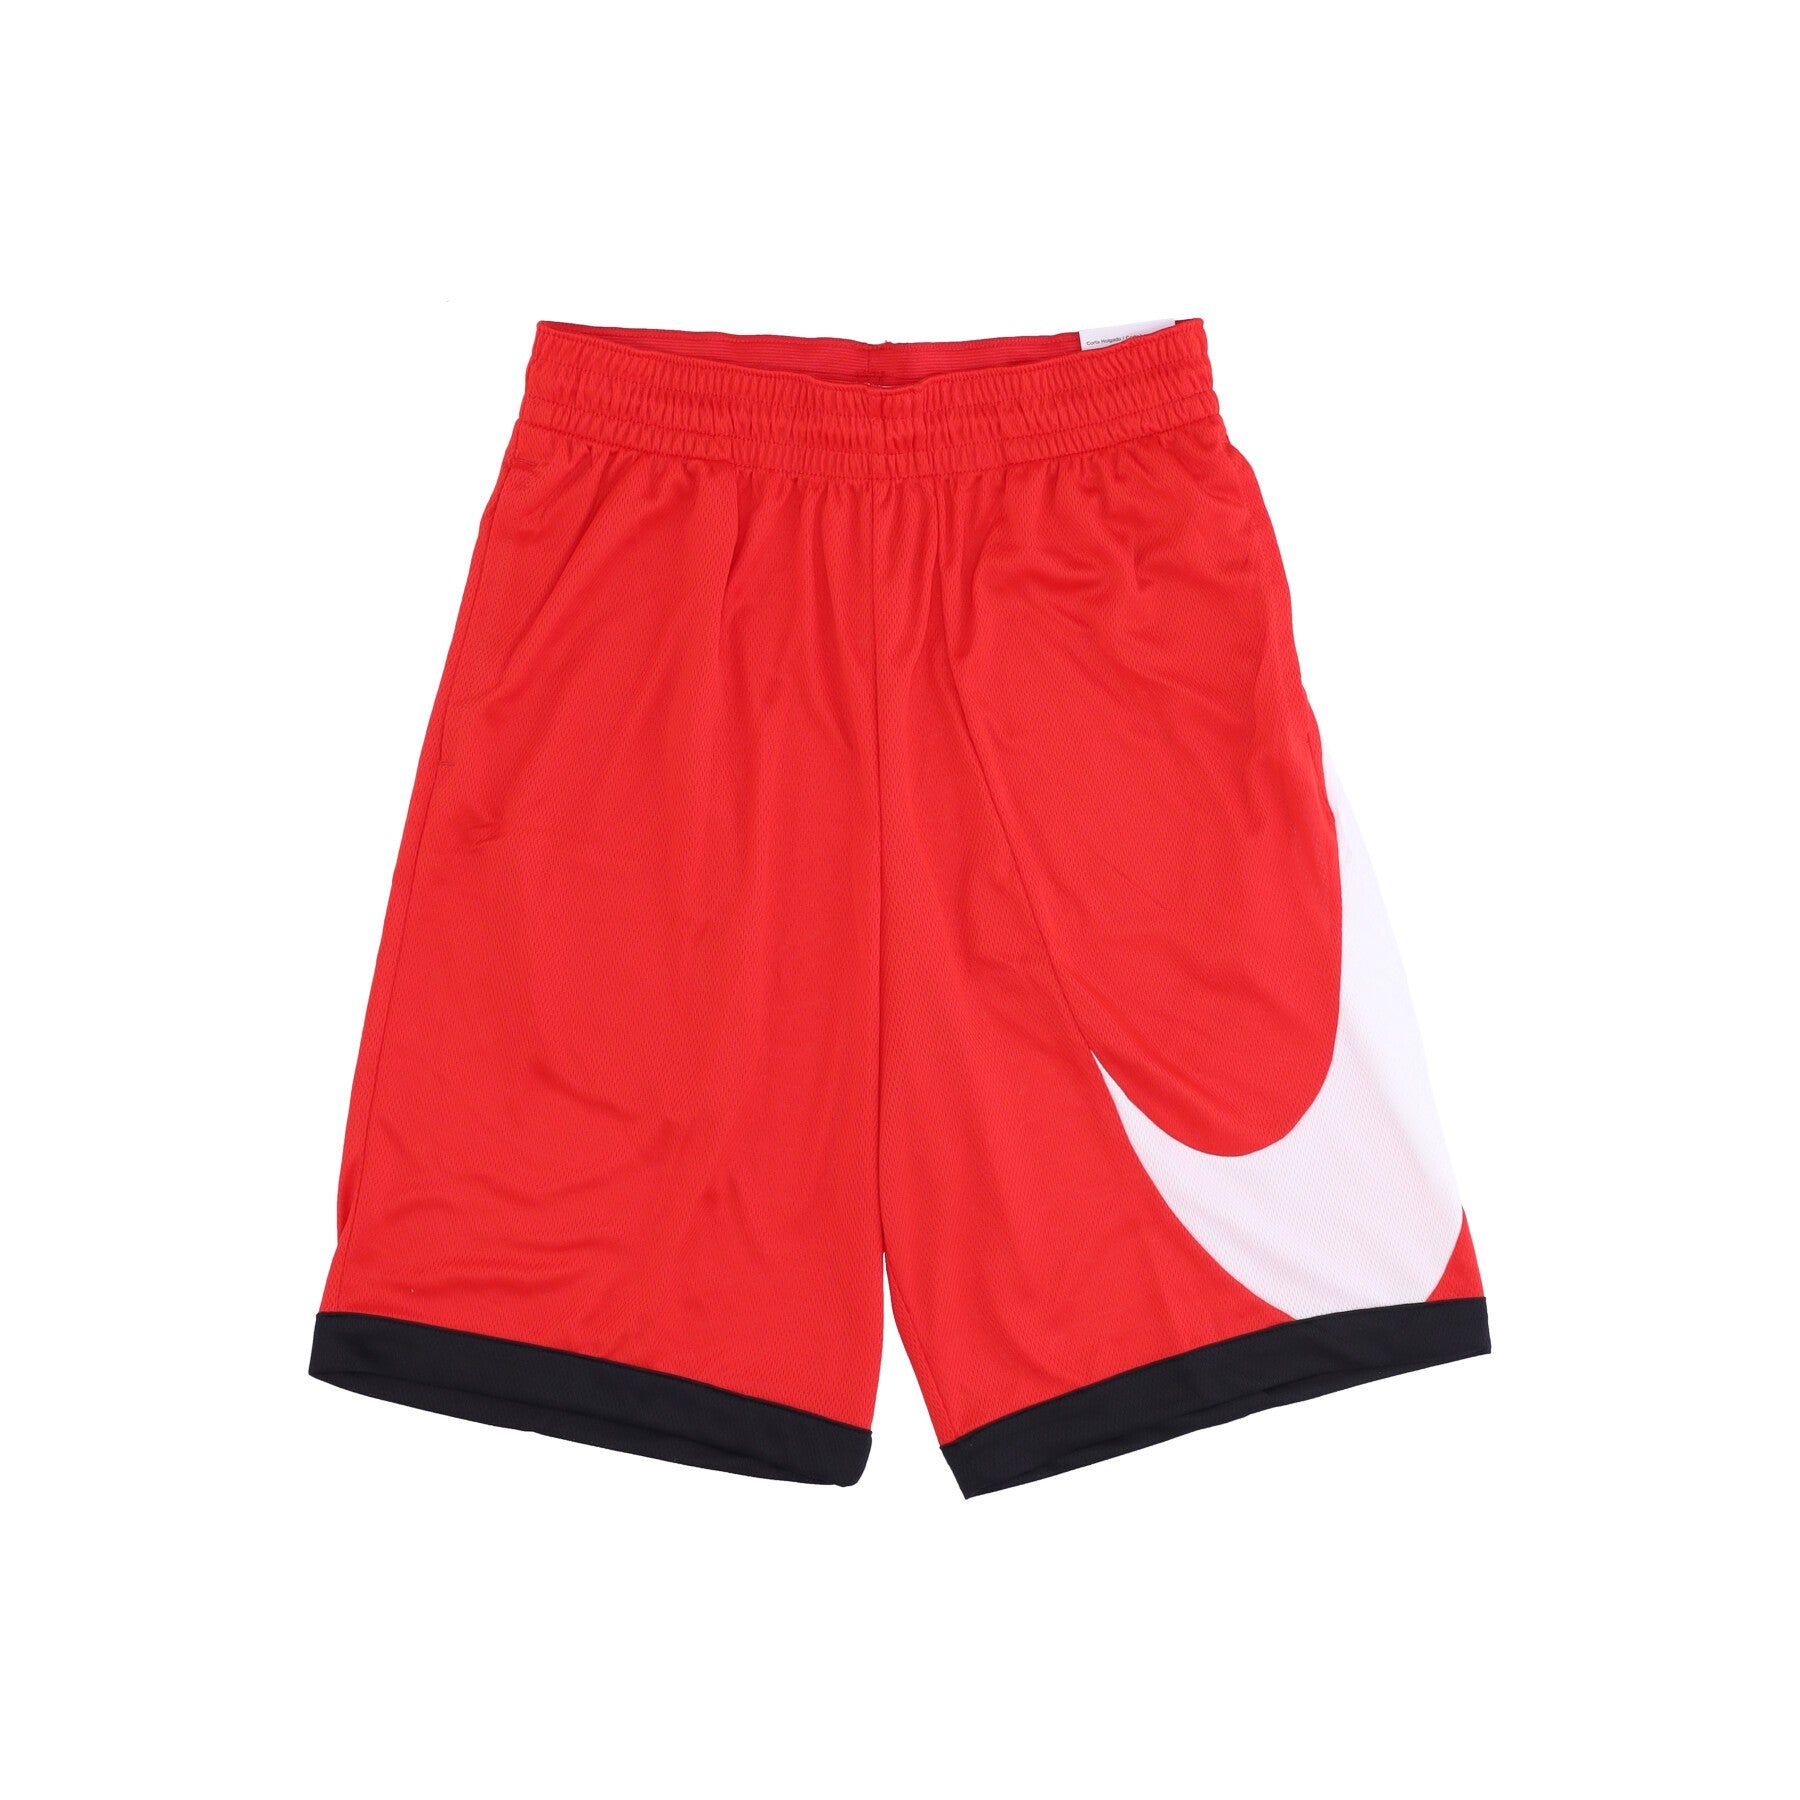 Nike, Pantaloncino Tipo Basket Uomo Dri-fit 10in Short 3.0, University Red/black/white